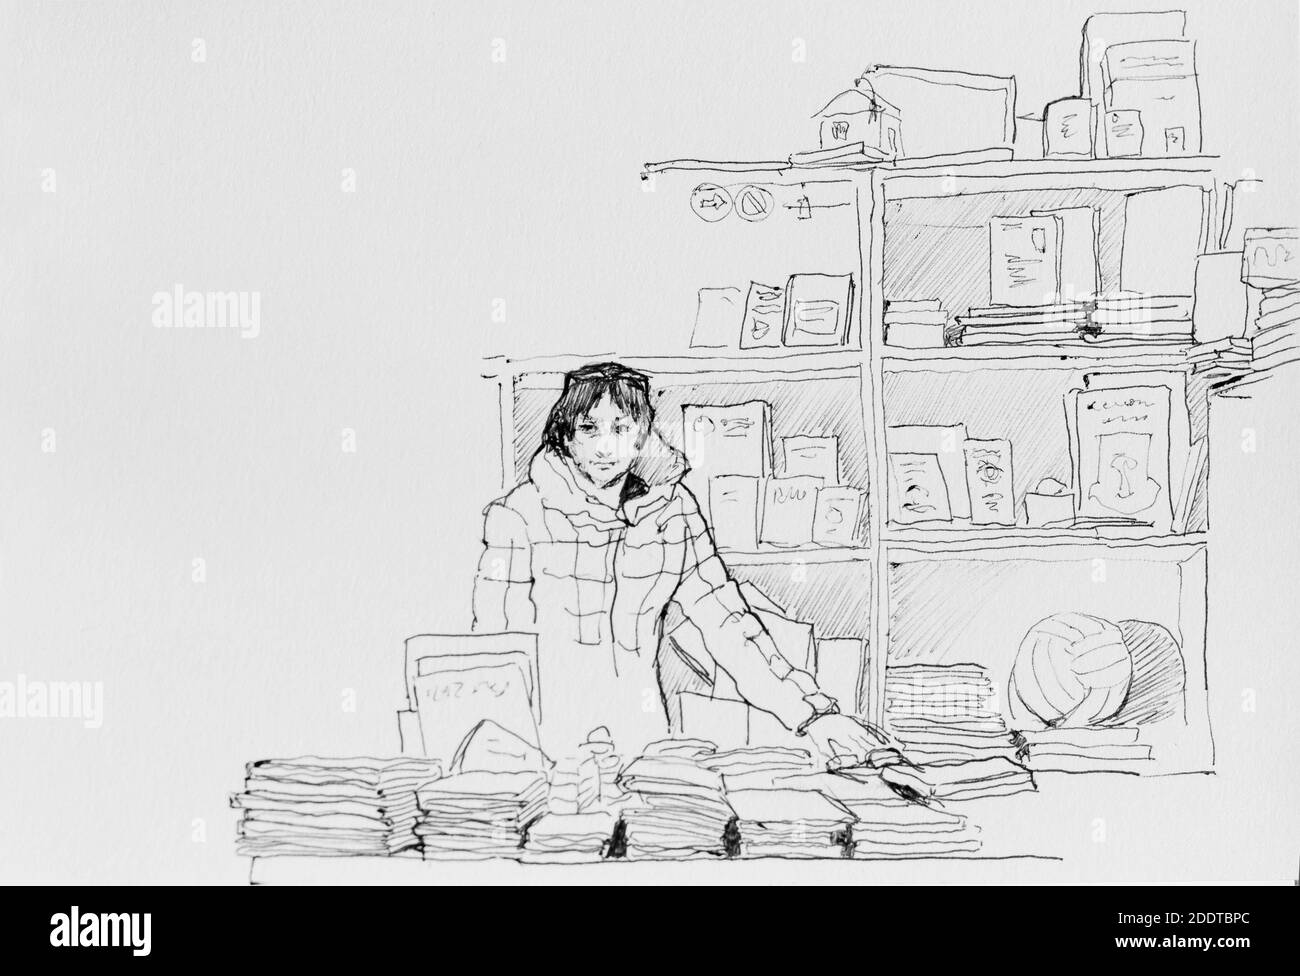 Verkäuferin im Outdoor-Buchladen mit Büchern Original Stift Illustration Radierung Skizze Stockfoto